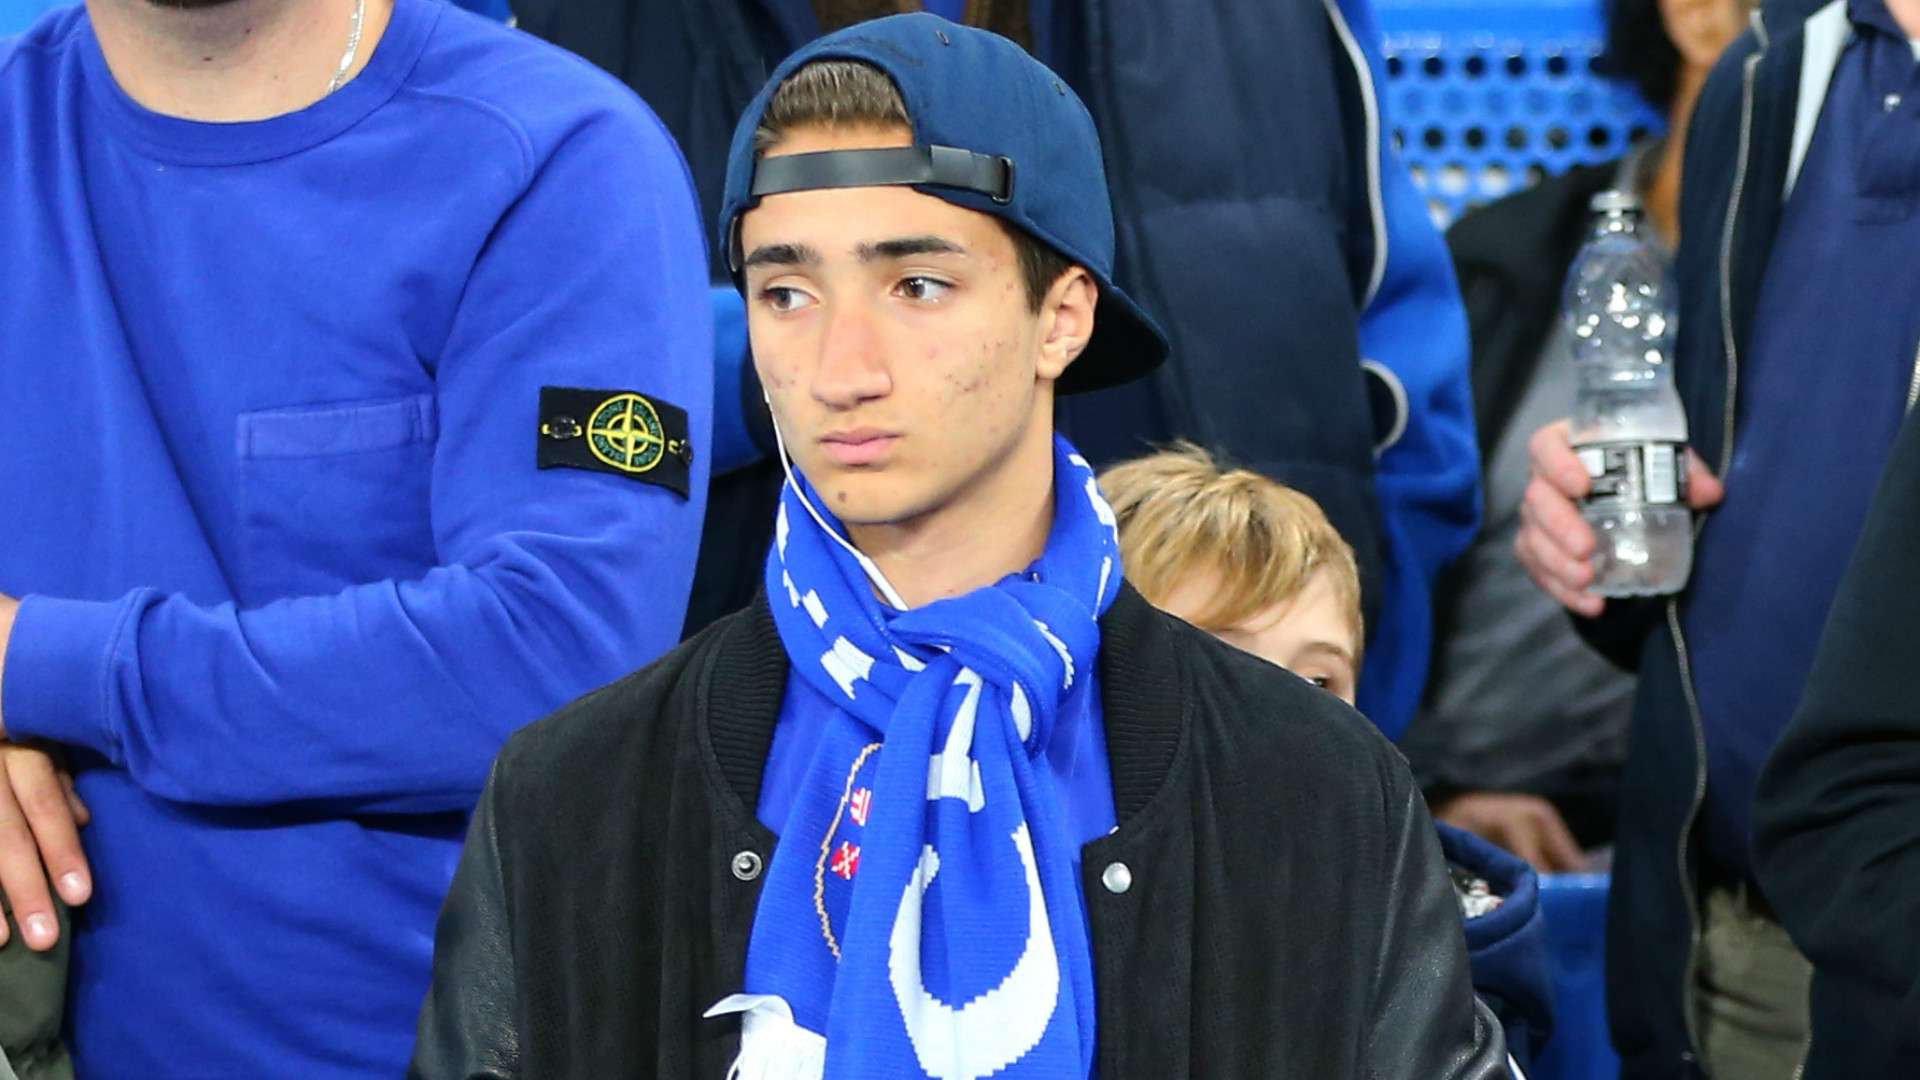 Jose Jr, the son of Jose Mourinho